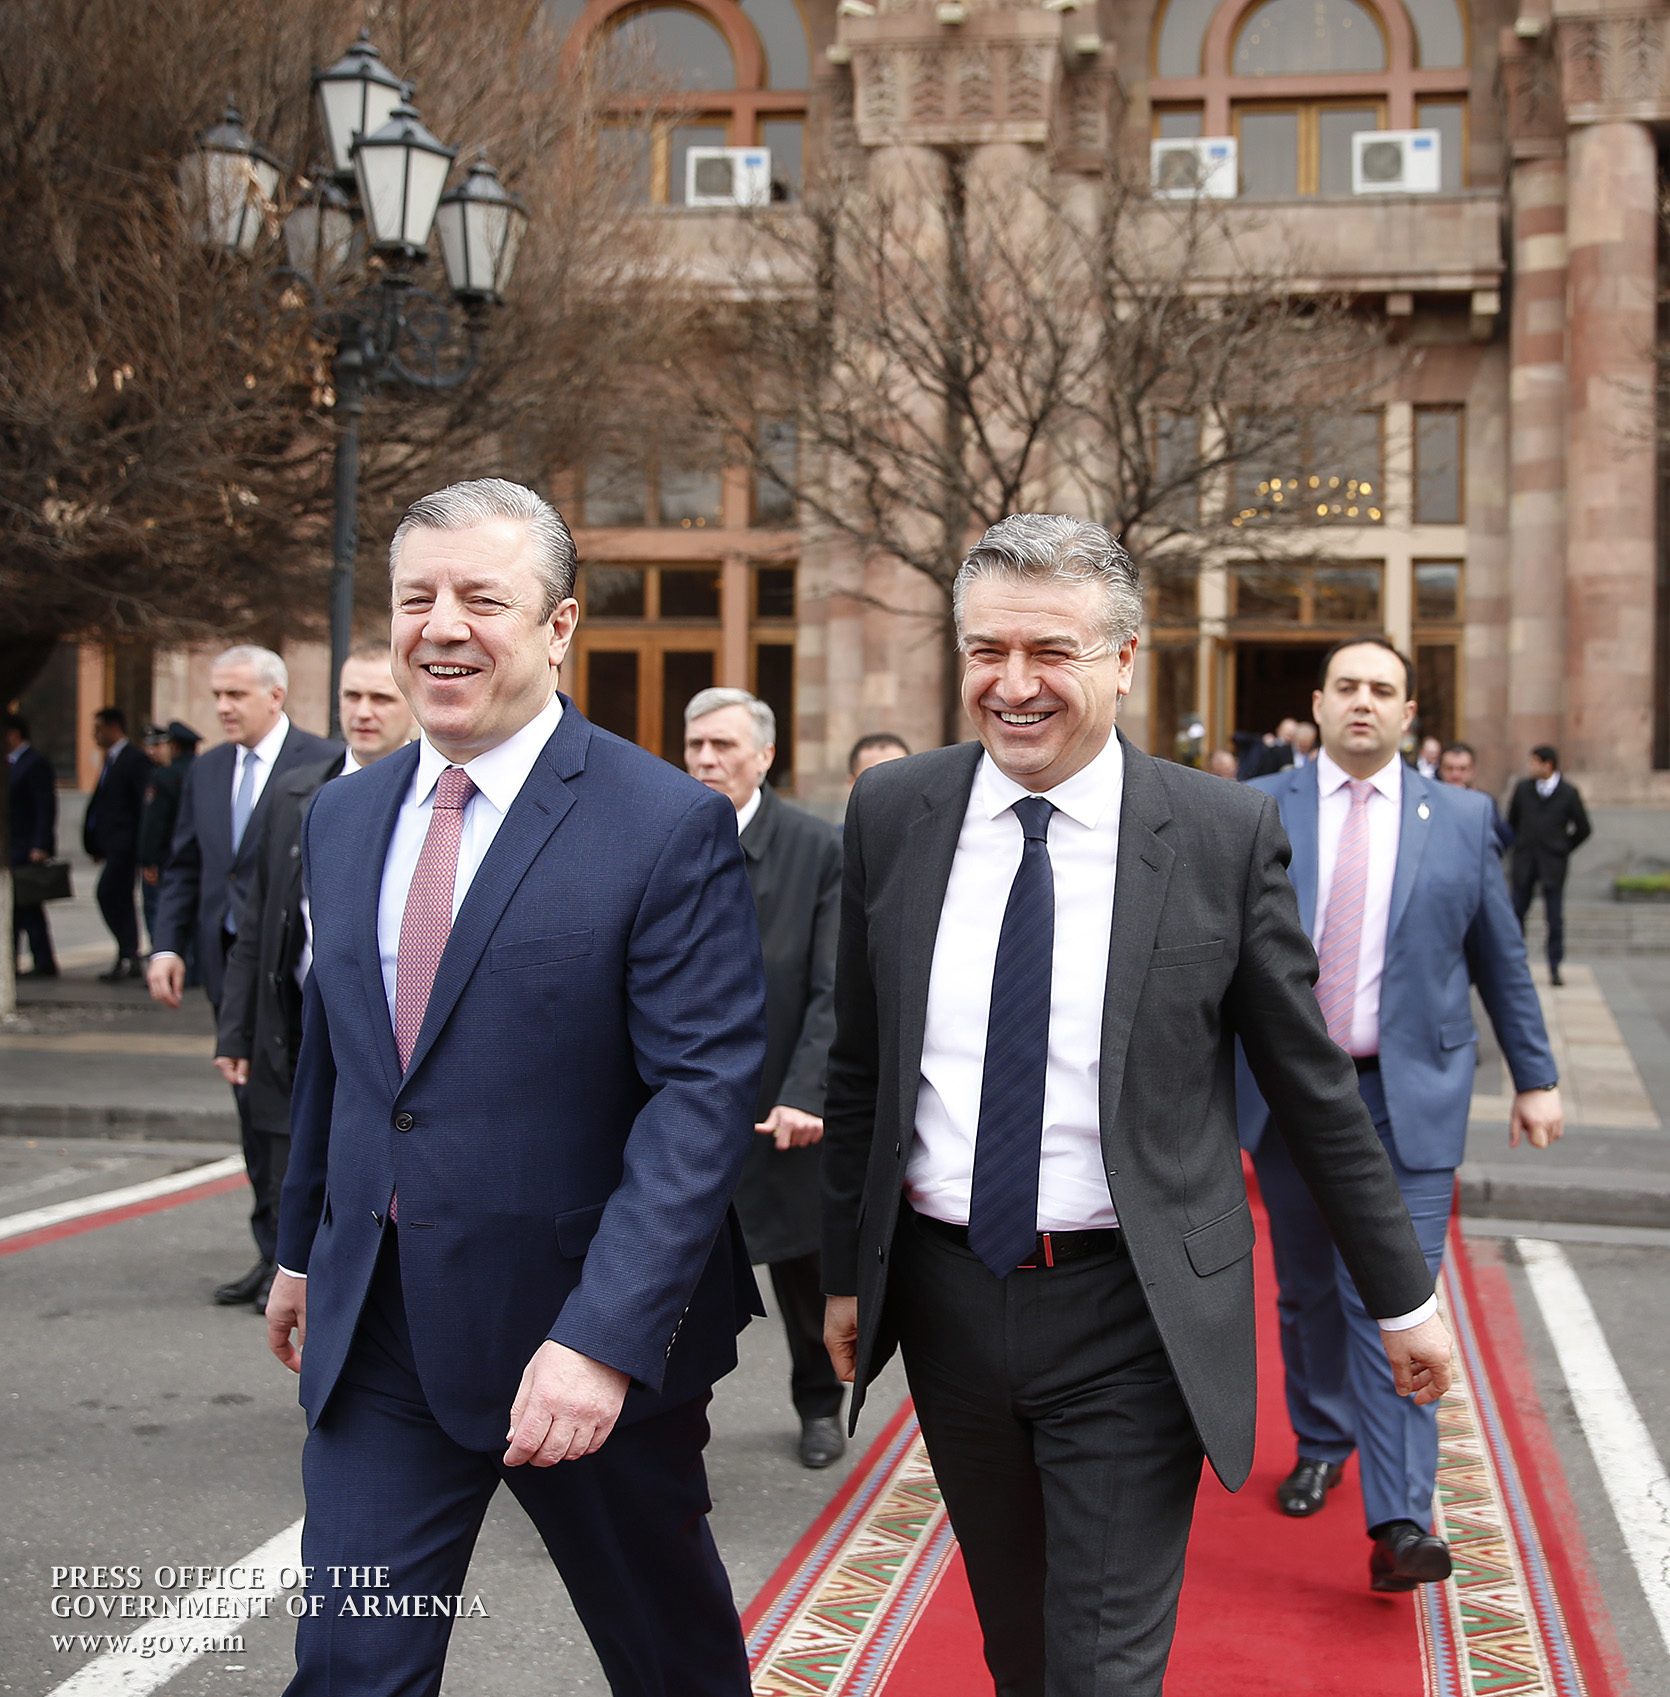 Վրաստանի վարչապետ. իմ բարեկամ երկրին ցանկանում եմ, որ հաջողությամբ ավարտի այն բարեփոխումը, որն սկսվել է Հայաստանում